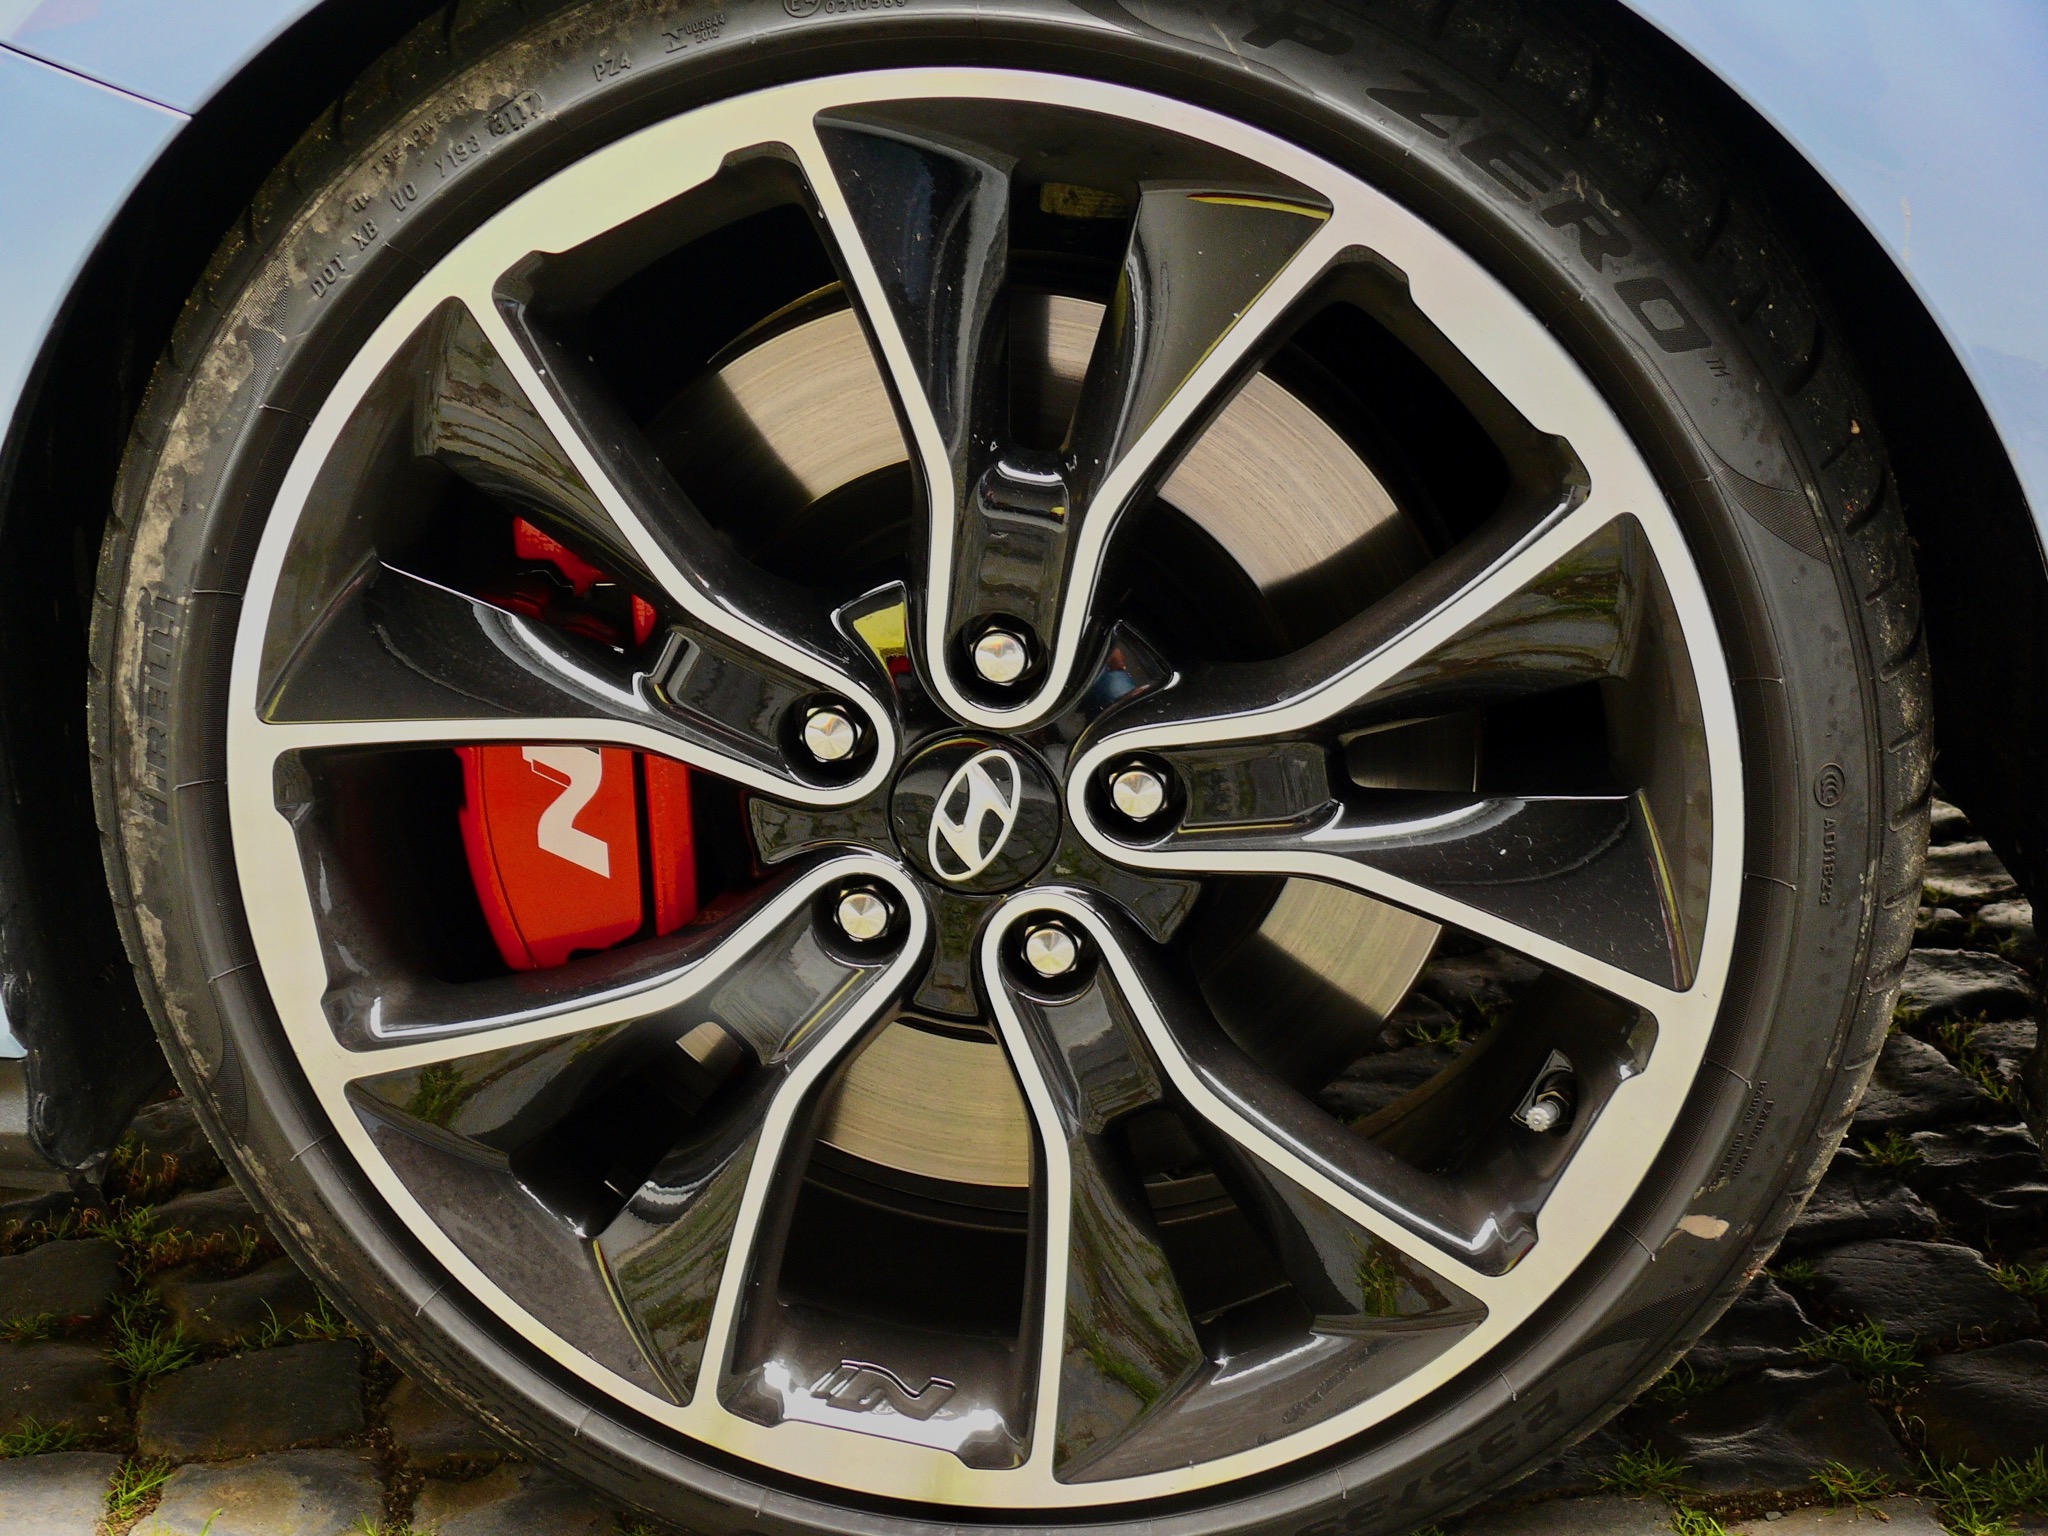 Hyundai i30 N Performance im Test: wie gut ist der Hot Hatch wirklich?